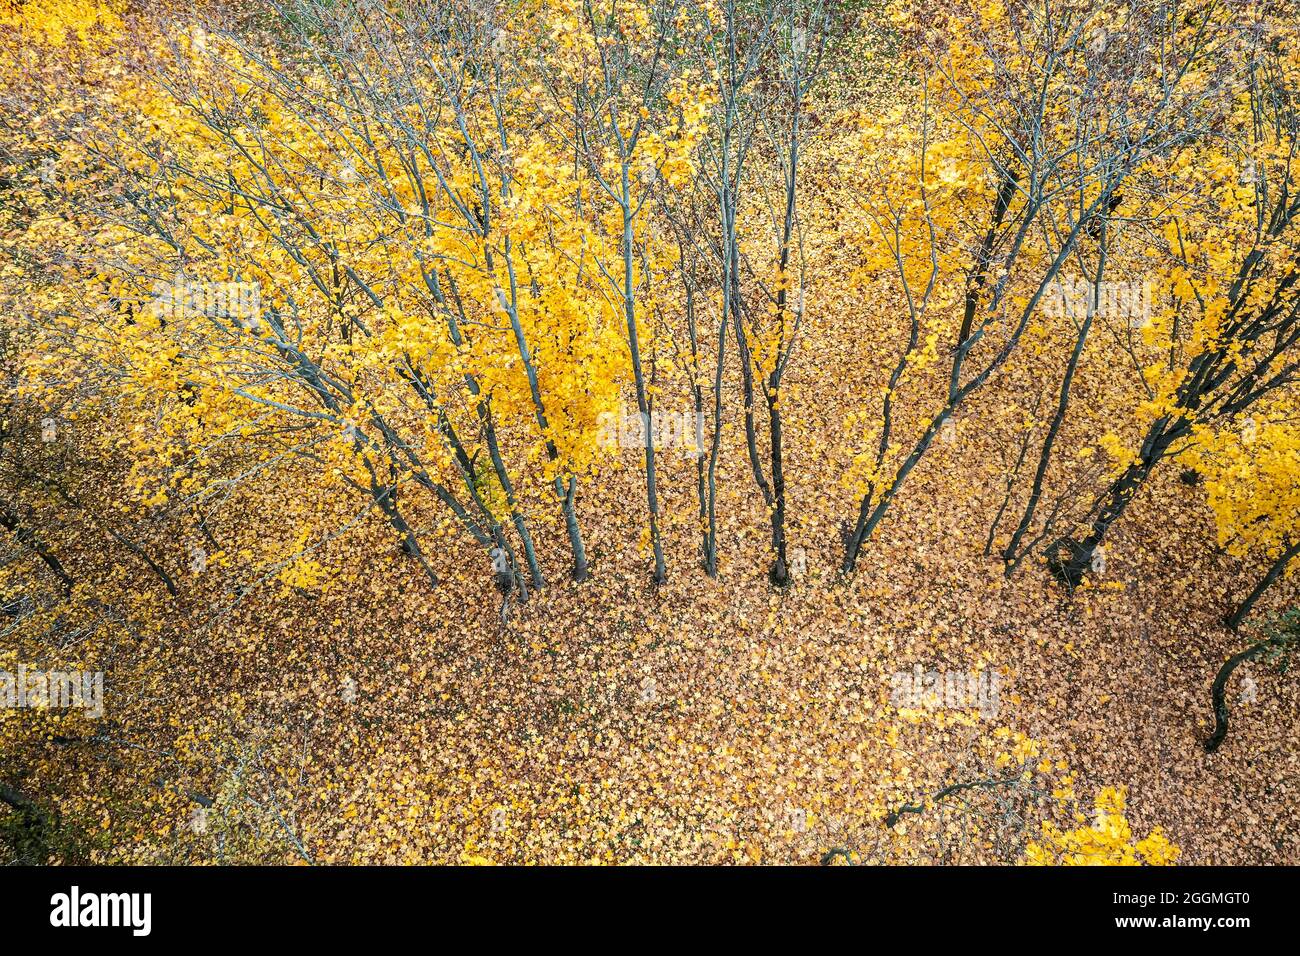 paesaggio forestale autunnale. alberi gialli luminosi e foglie colorate sul pavimento della foresta. vista aerea Foto Stock